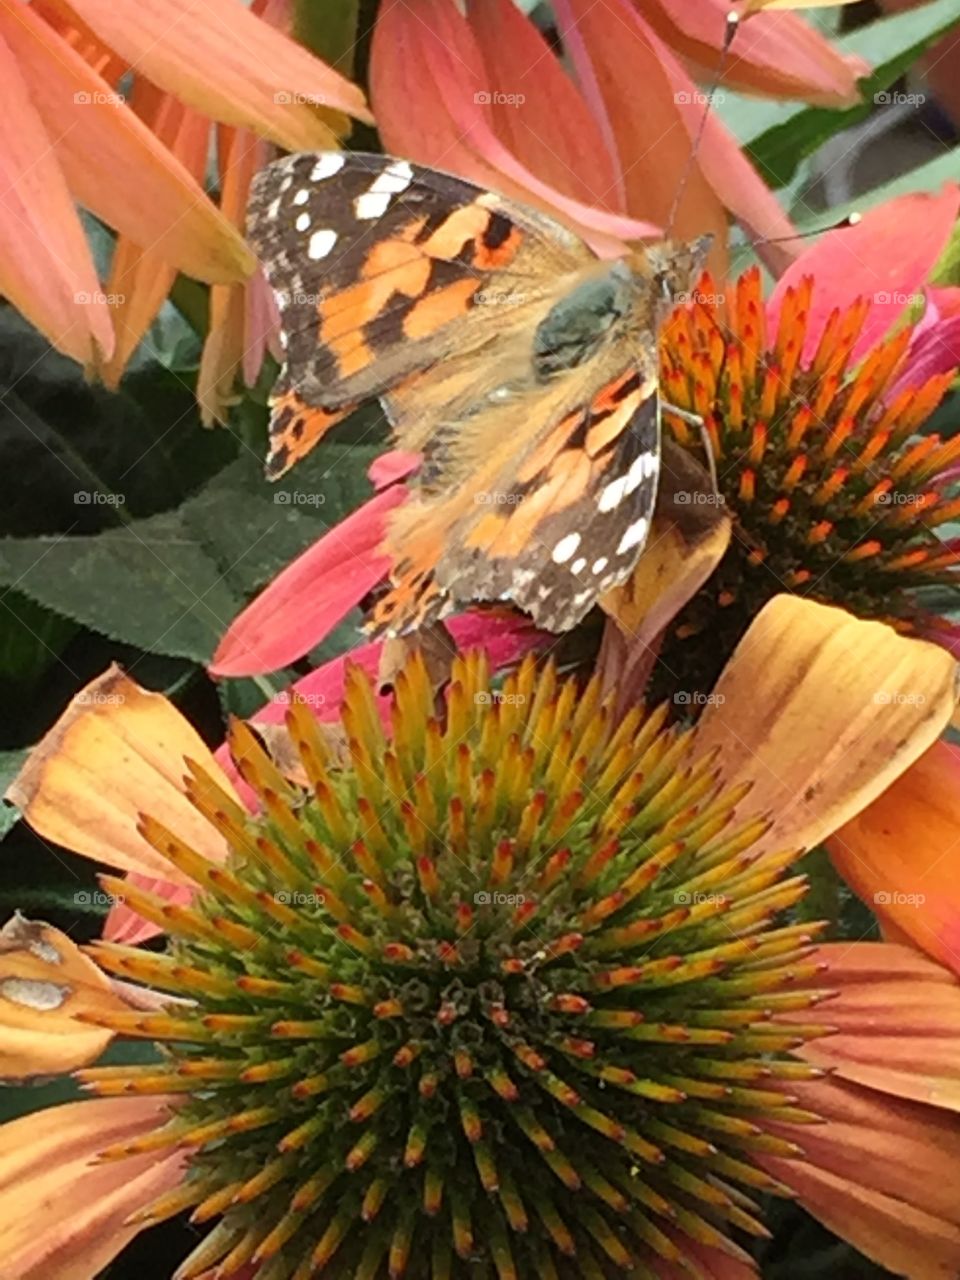 Butterfly blending in